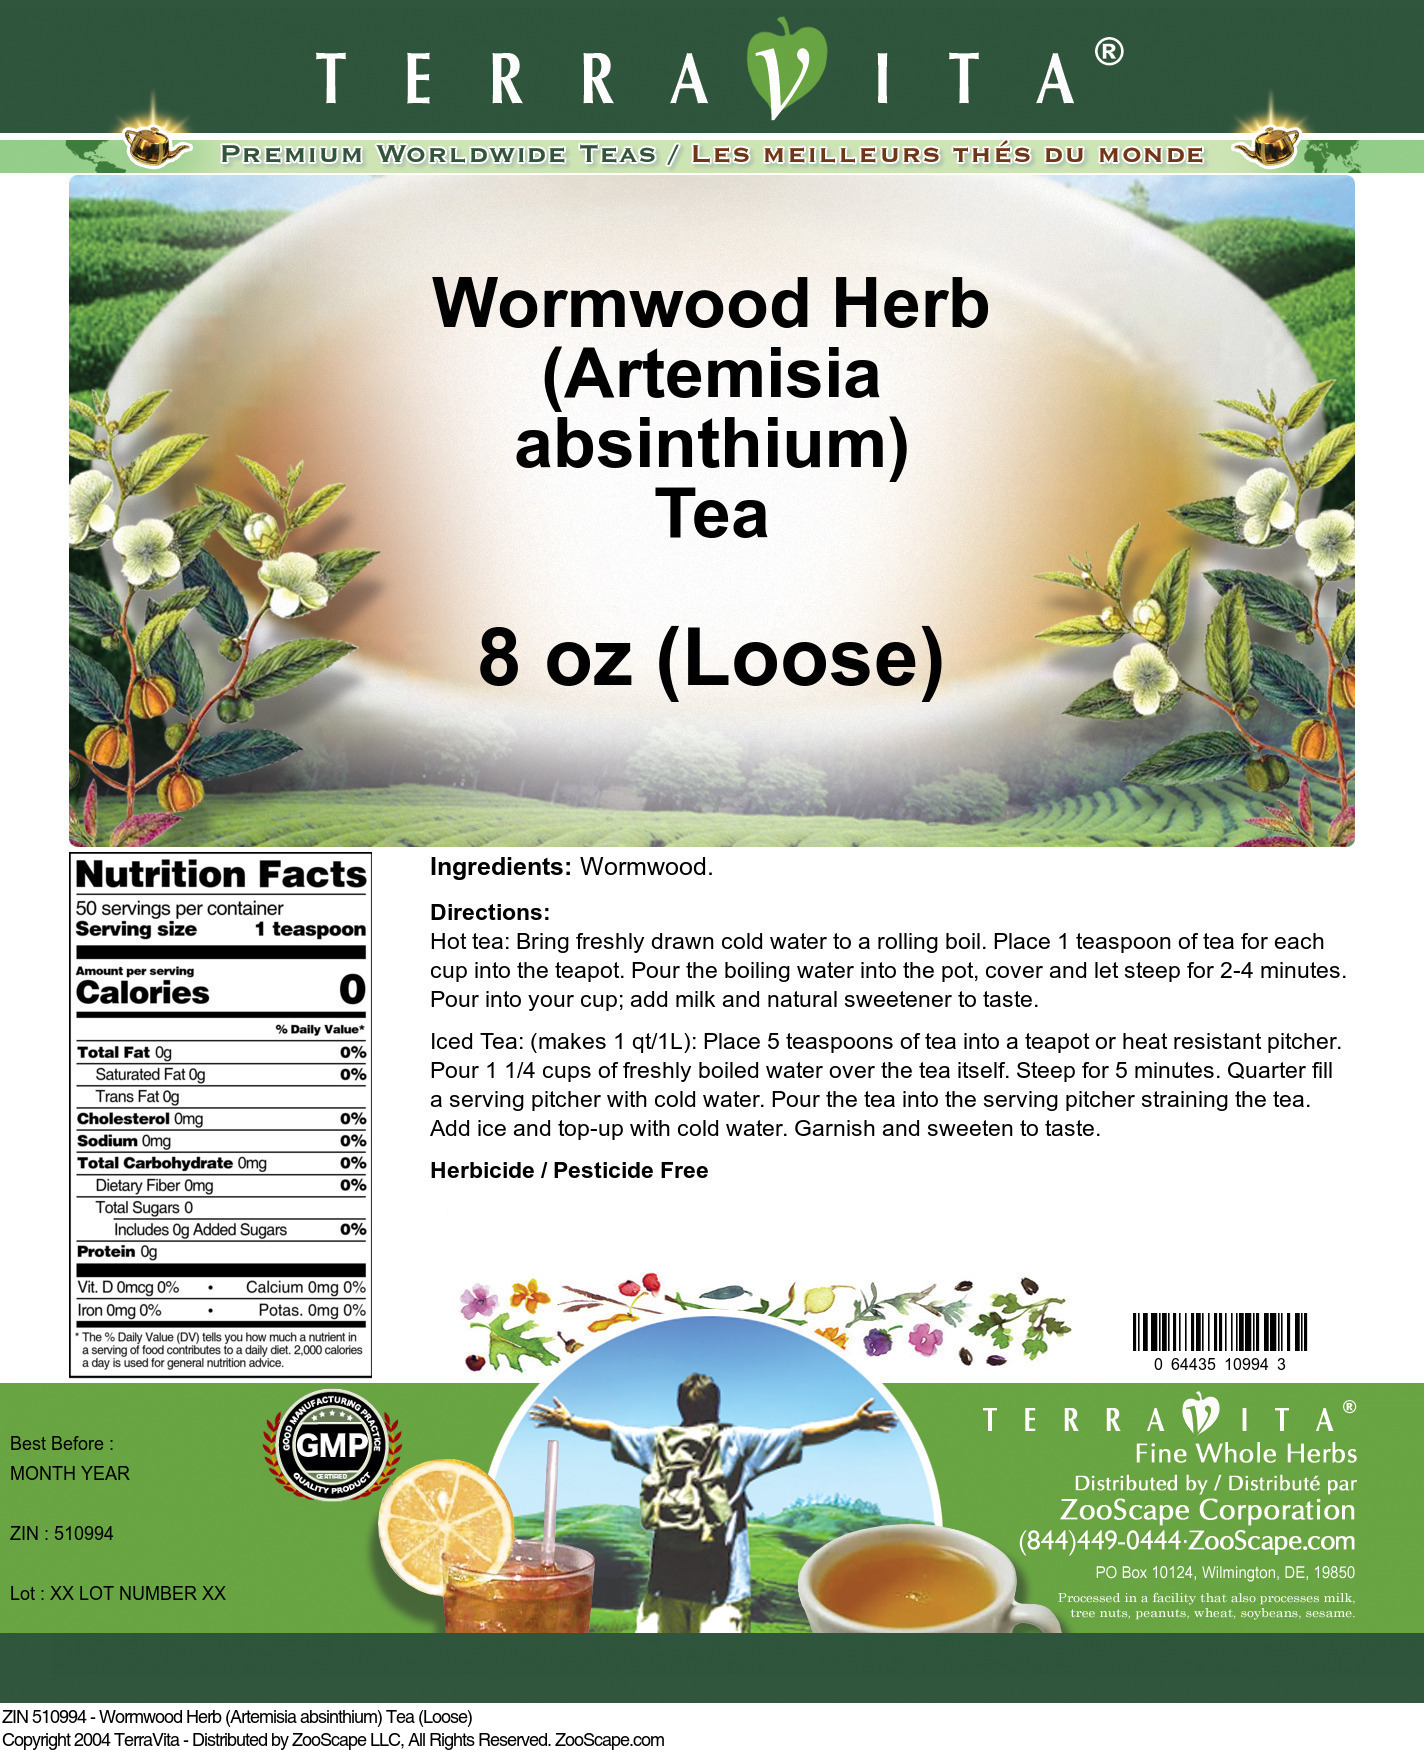 Wormwood Herb (Artemisia absinthium) Tea (Loose) - Label